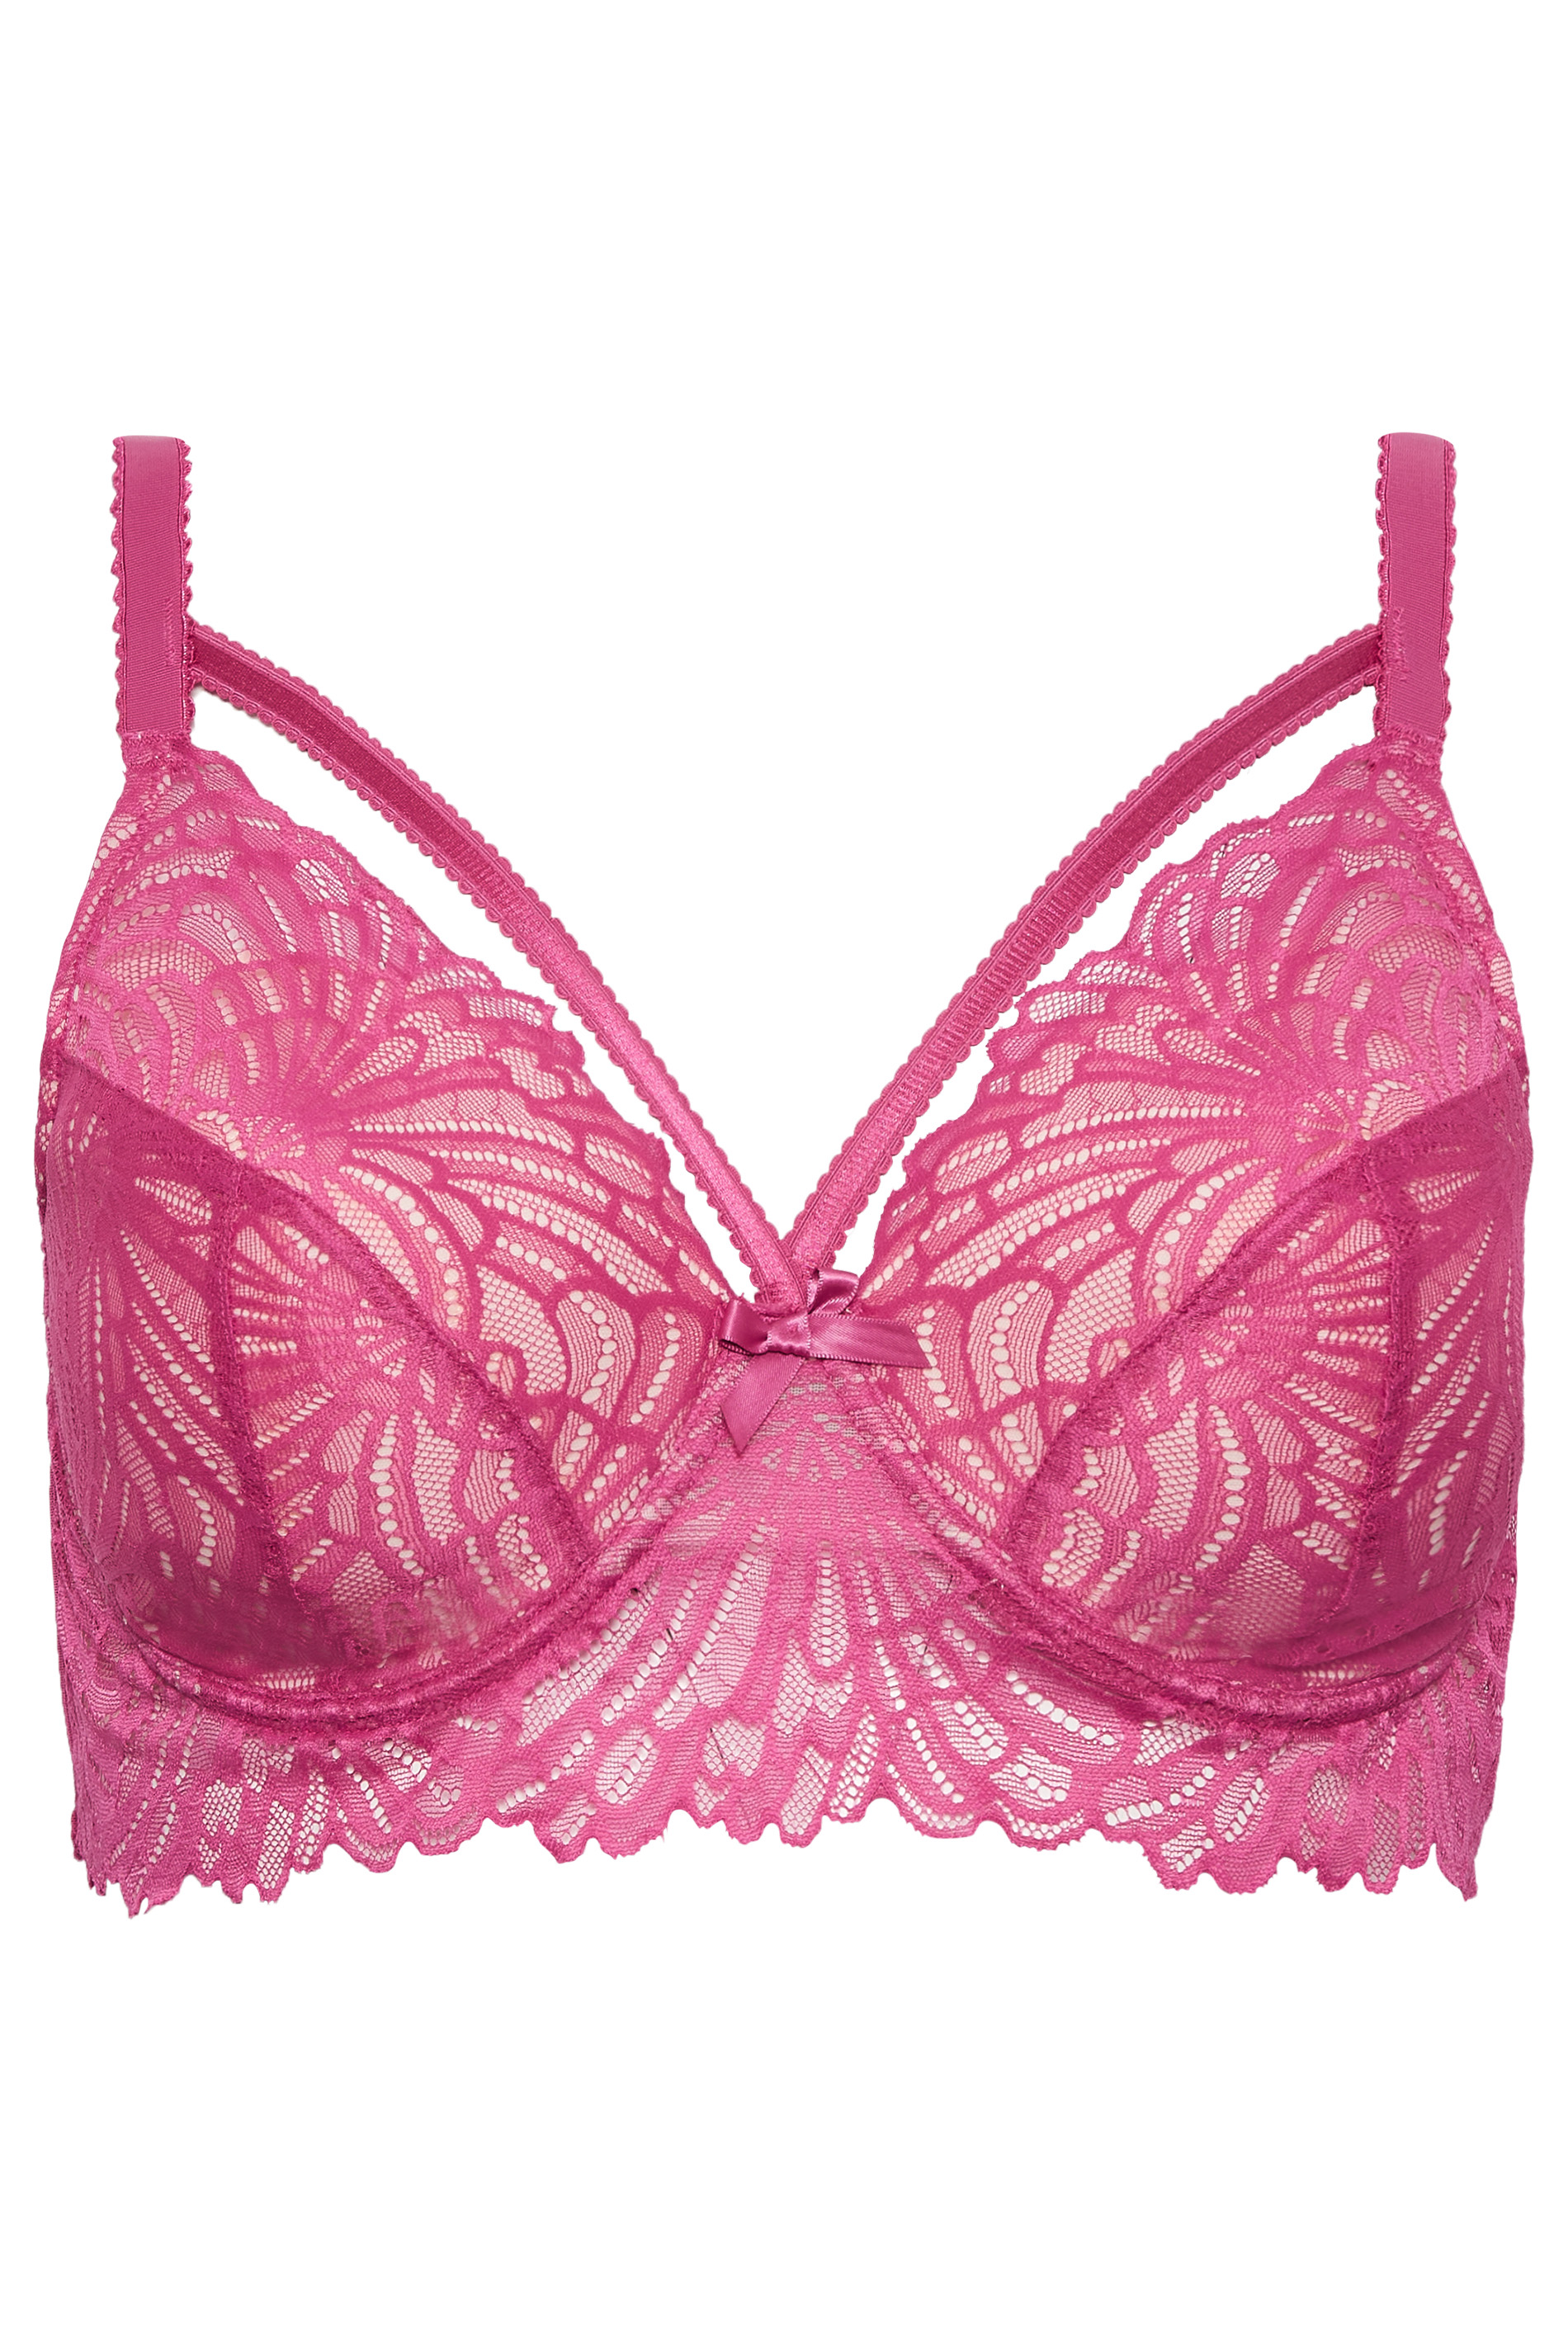 Pink Bra, Fashion Women's Lace Beauty Back Solid Strap Wrap Plus Size Bra  Underwear, Girls Sports Bras 10-12